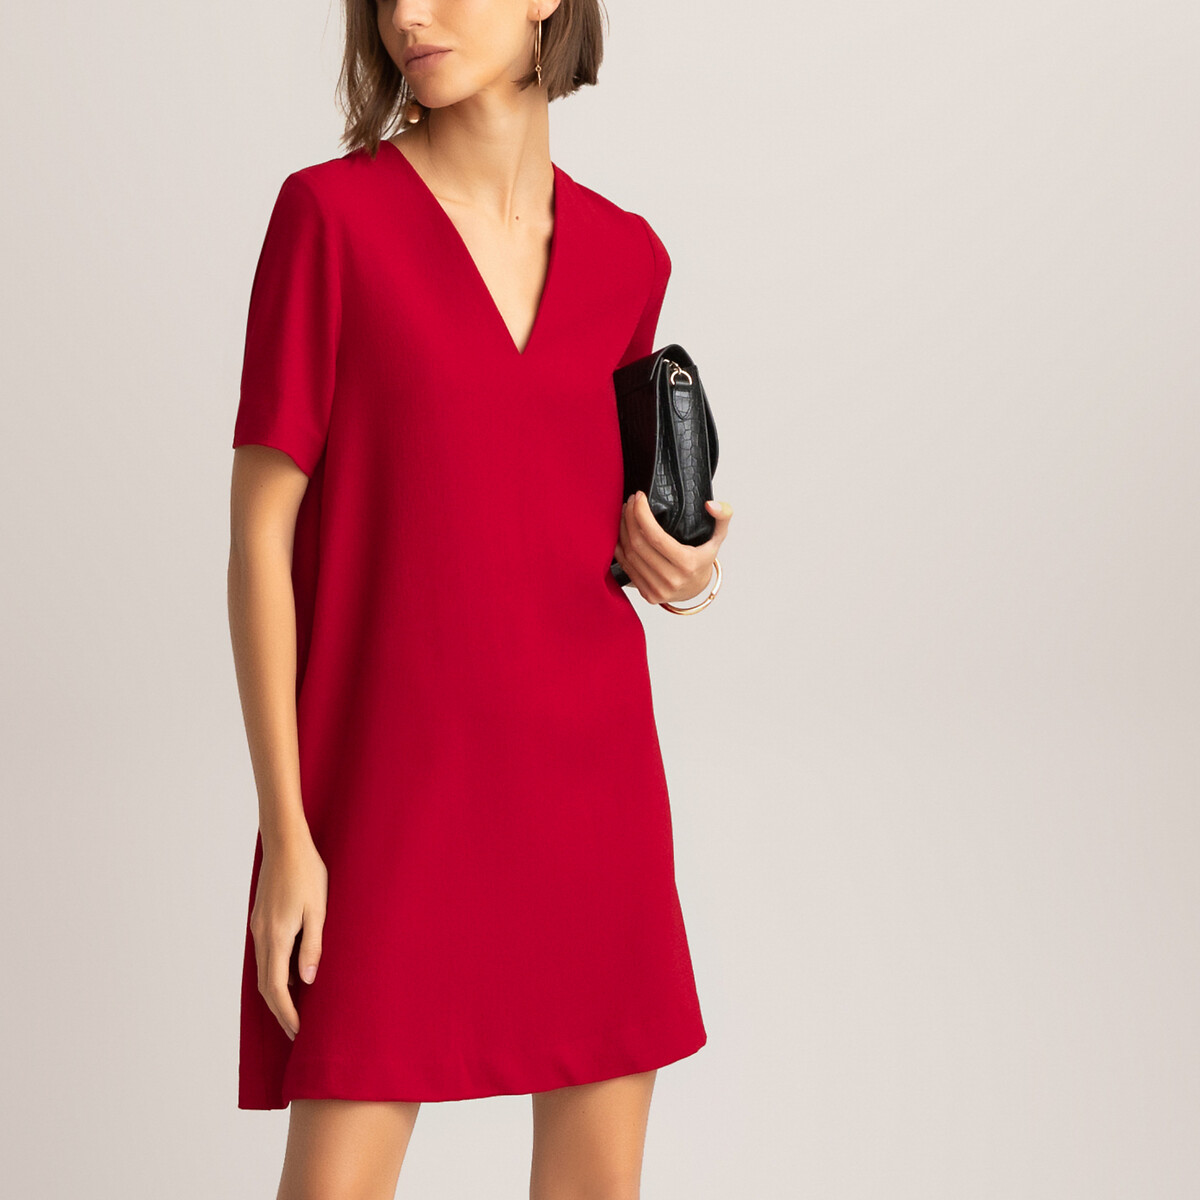 Расклешенное La Redoute Платье с V-образным вырезом и коротким рукавом 42 (FR) - 48 (RUS) красный, размер 42 (FR) - 48 (RUS) Платье с V-образным вырезом и коротким рукавом 42 (FR) - 48 (RUS) красный - фото 2